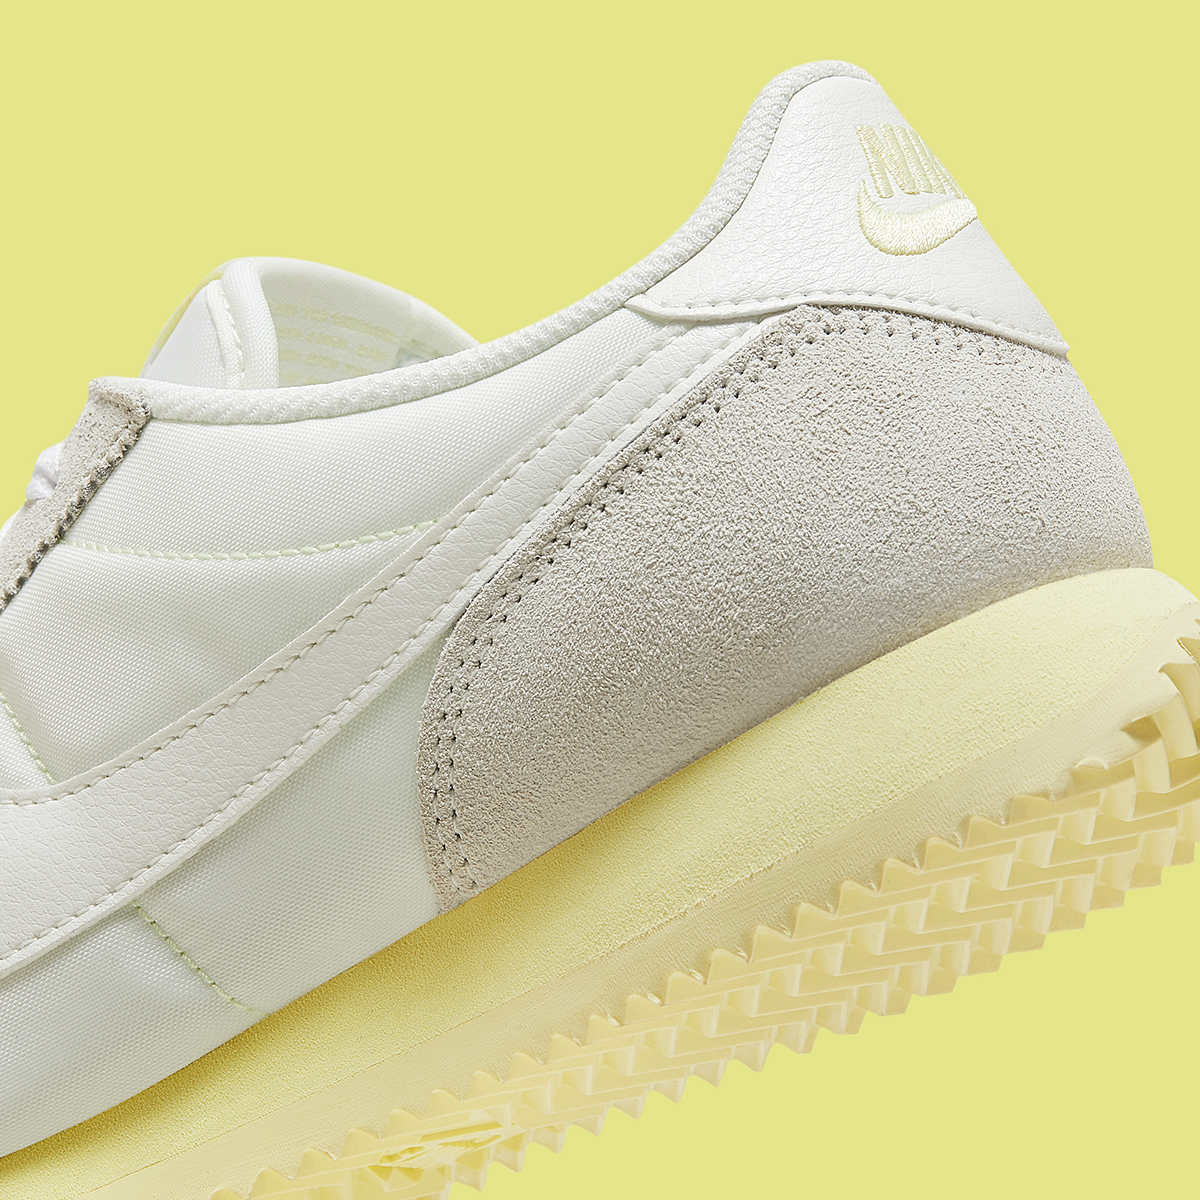 Nike Cortez White Pale Yellow Hf6410 118 1